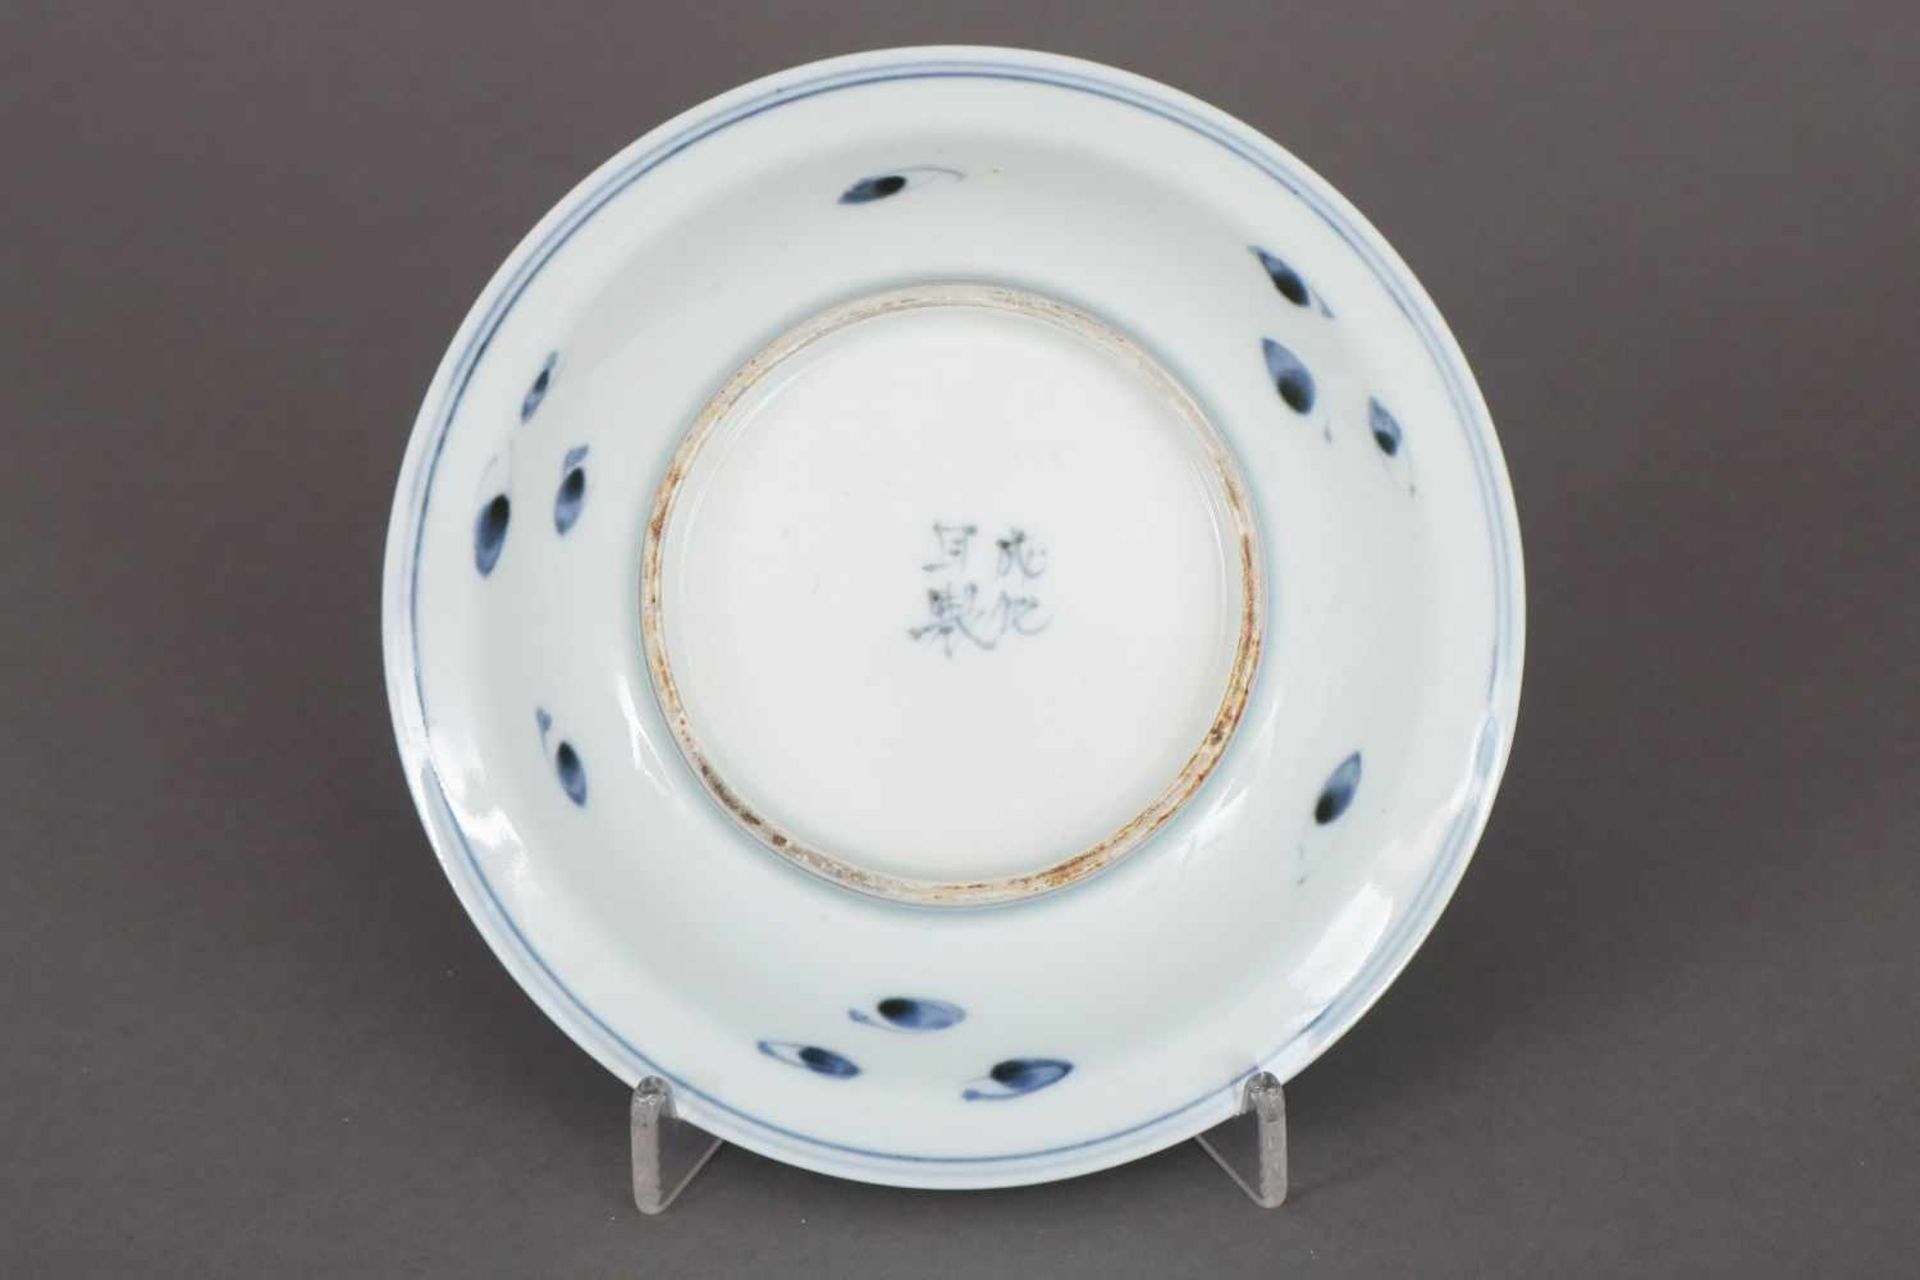 Chinesische Porzellanschale im Stile Mingrunde, vertiefte Schale, Blaumalerei, im Spiegel - Bild 2 aus 2